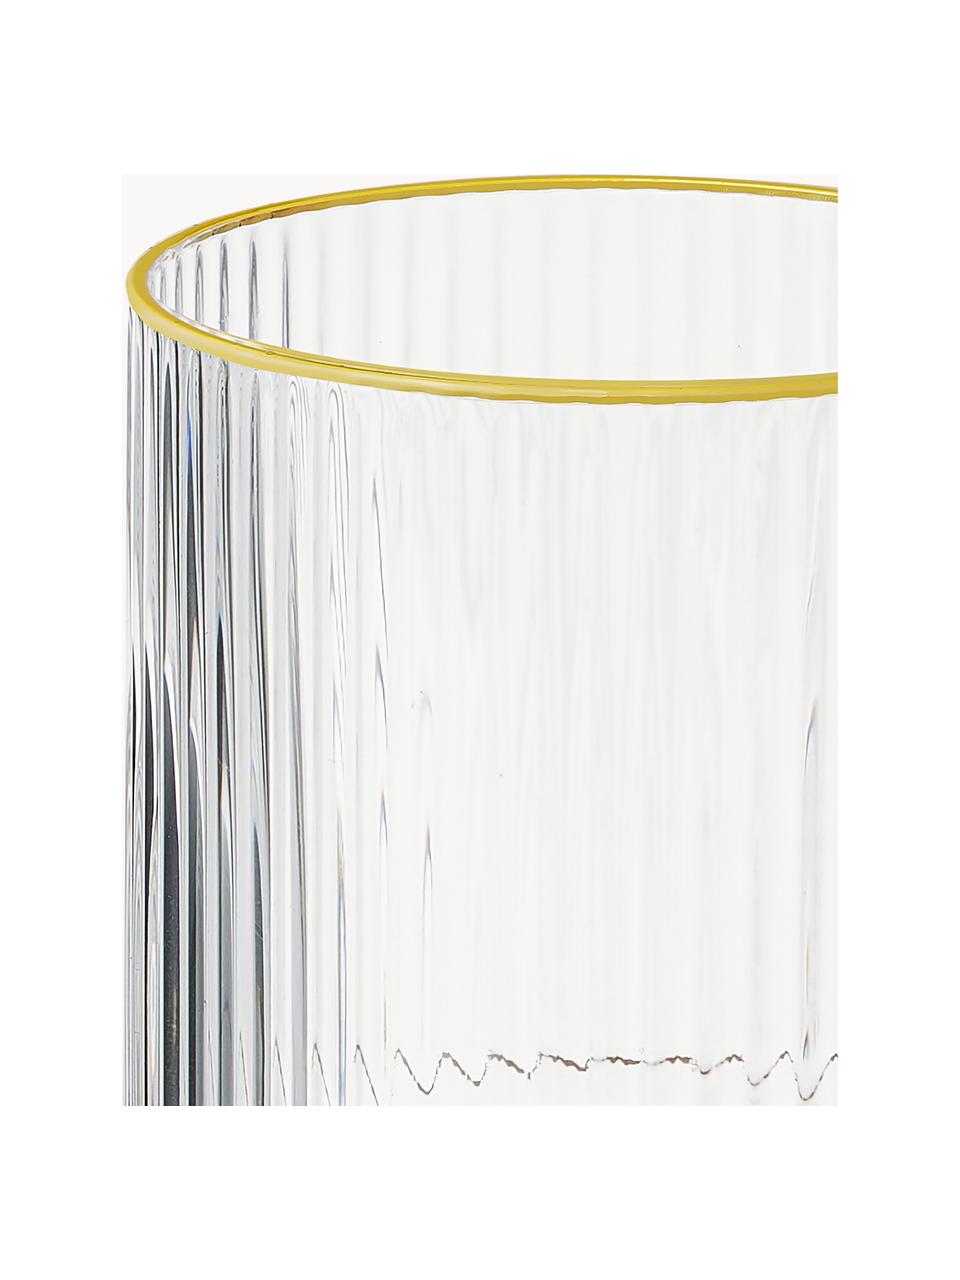 Handgefertigte Weingläser Minna mit Rillenrelief und Goldrand, 4 Stück, Glas, mundgeblasen, Transparent mit Goldrand, Ø 8 x H 17 cm, 300 ml